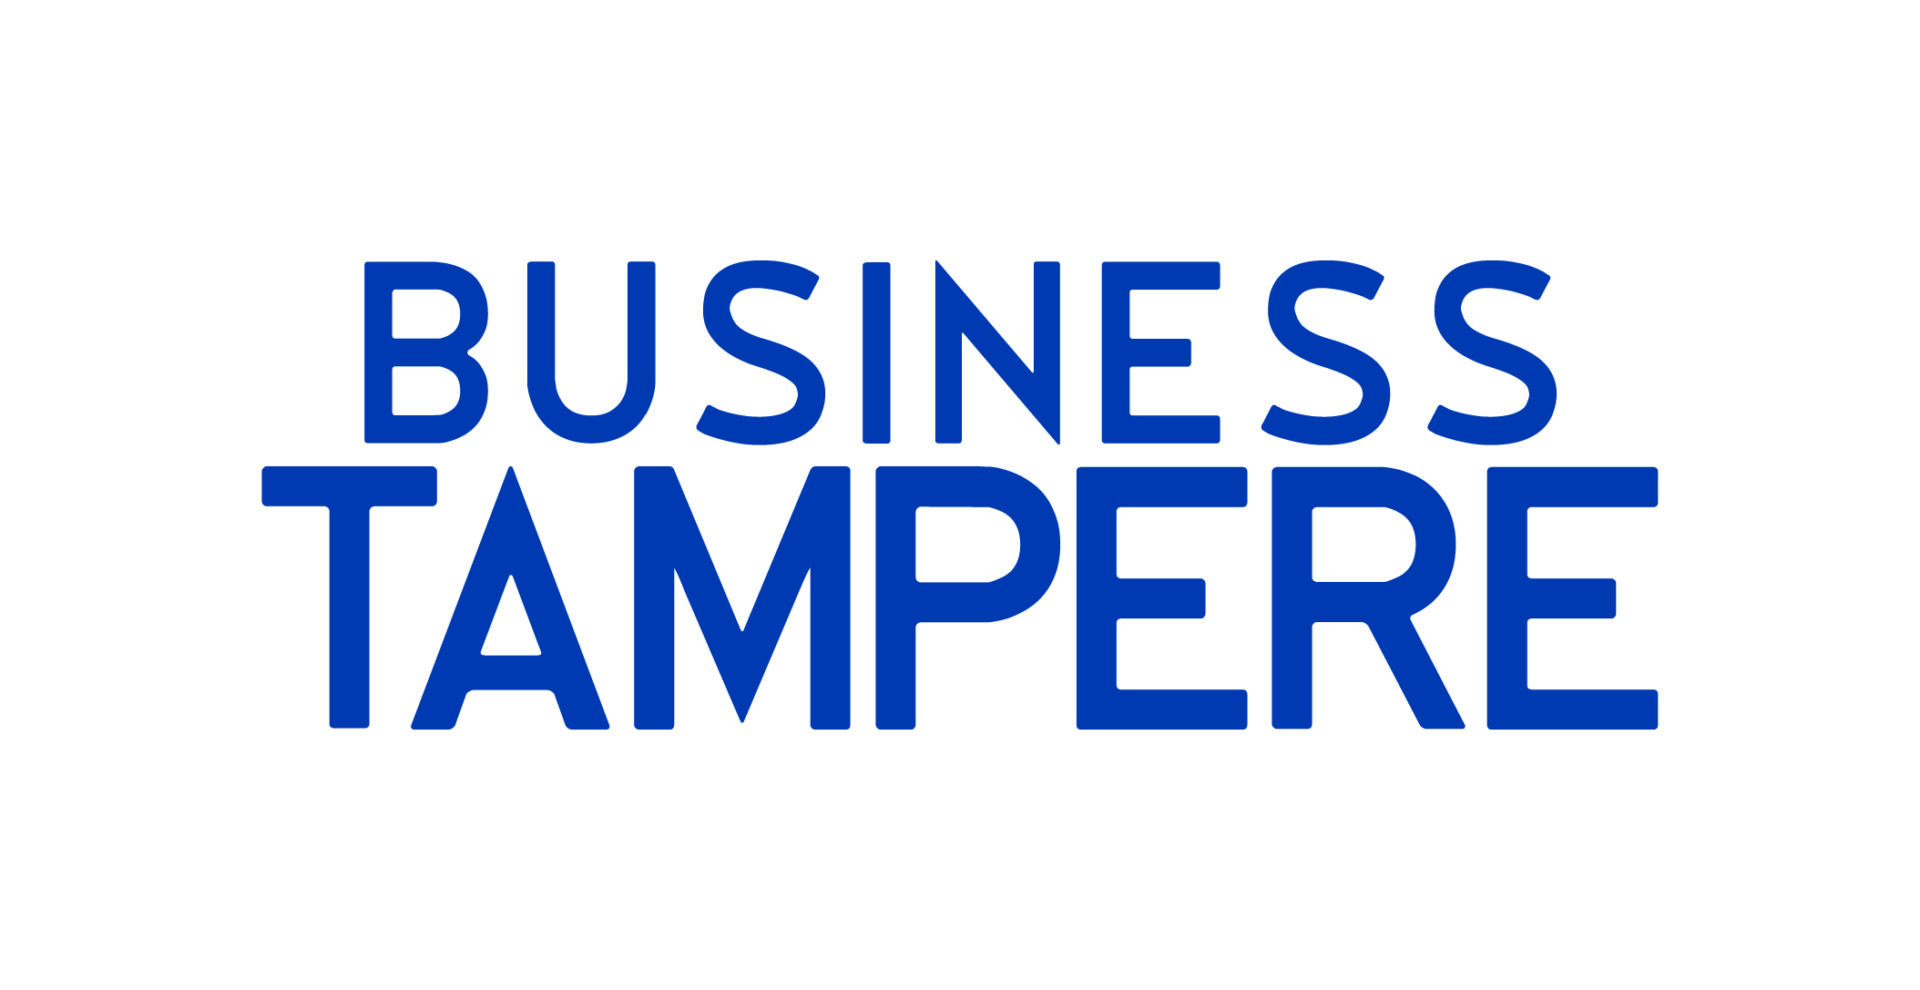 business tampere logo 2018 cmyk darkwater